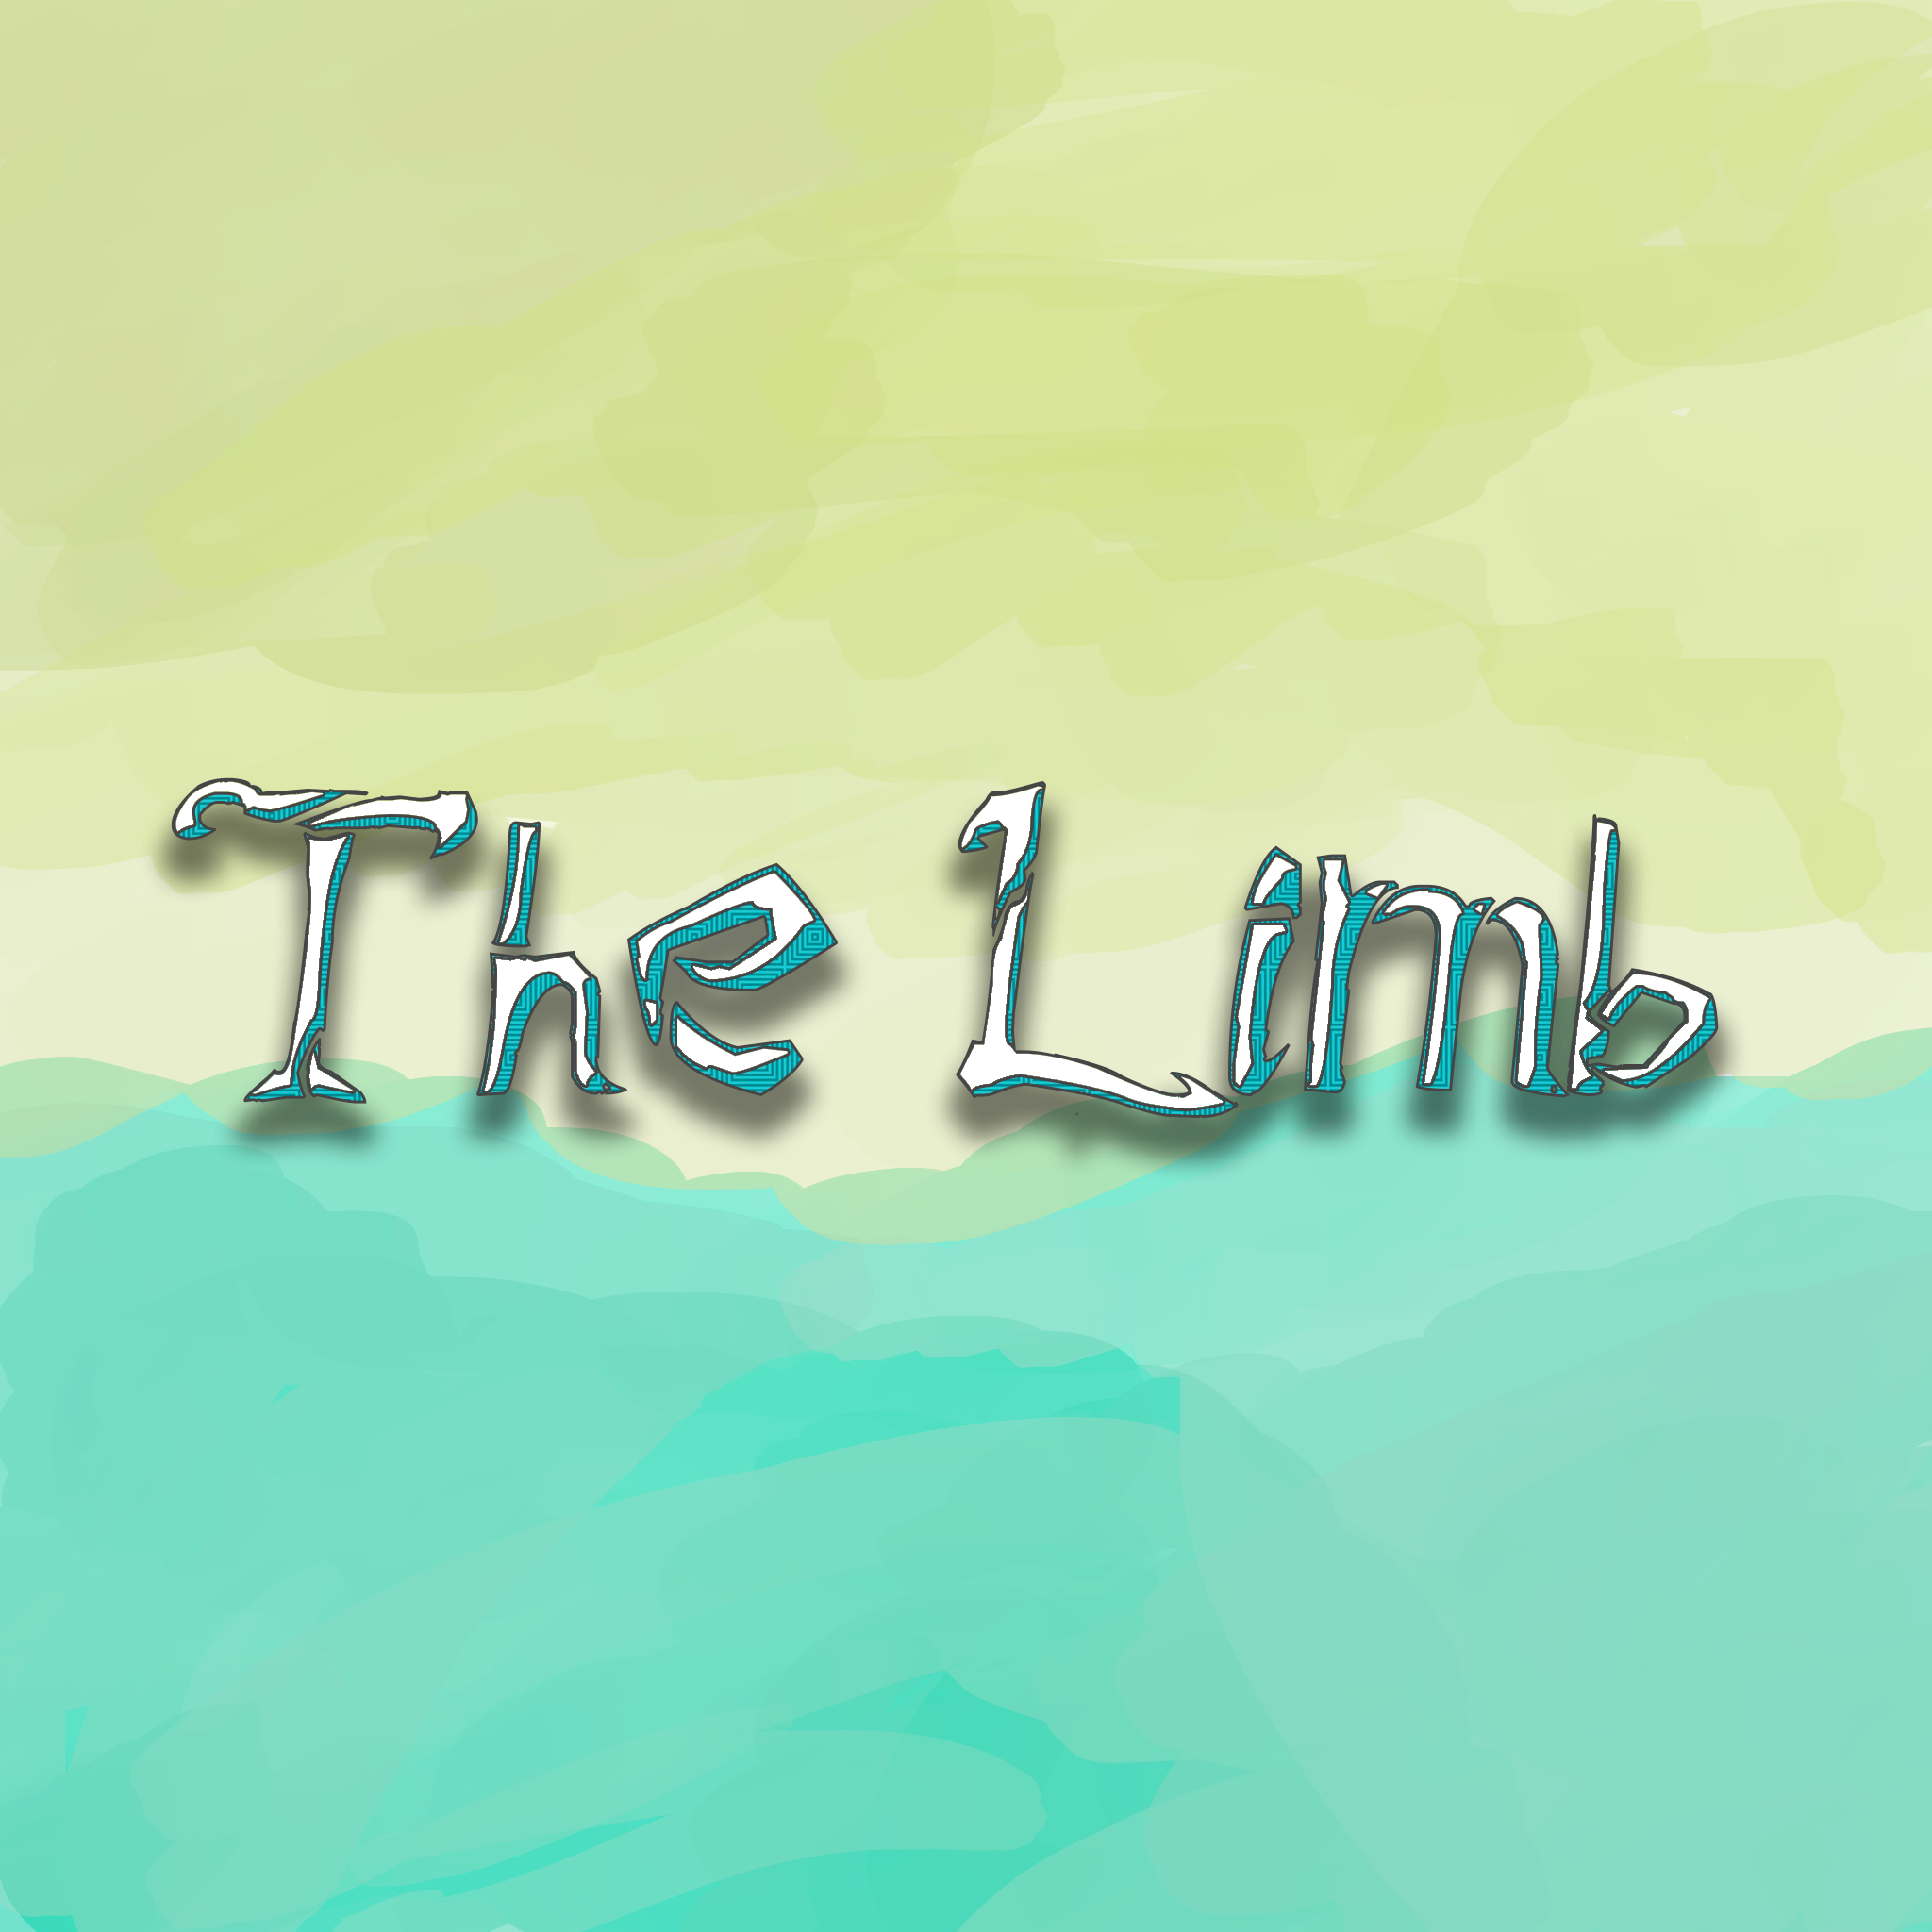 The Limb